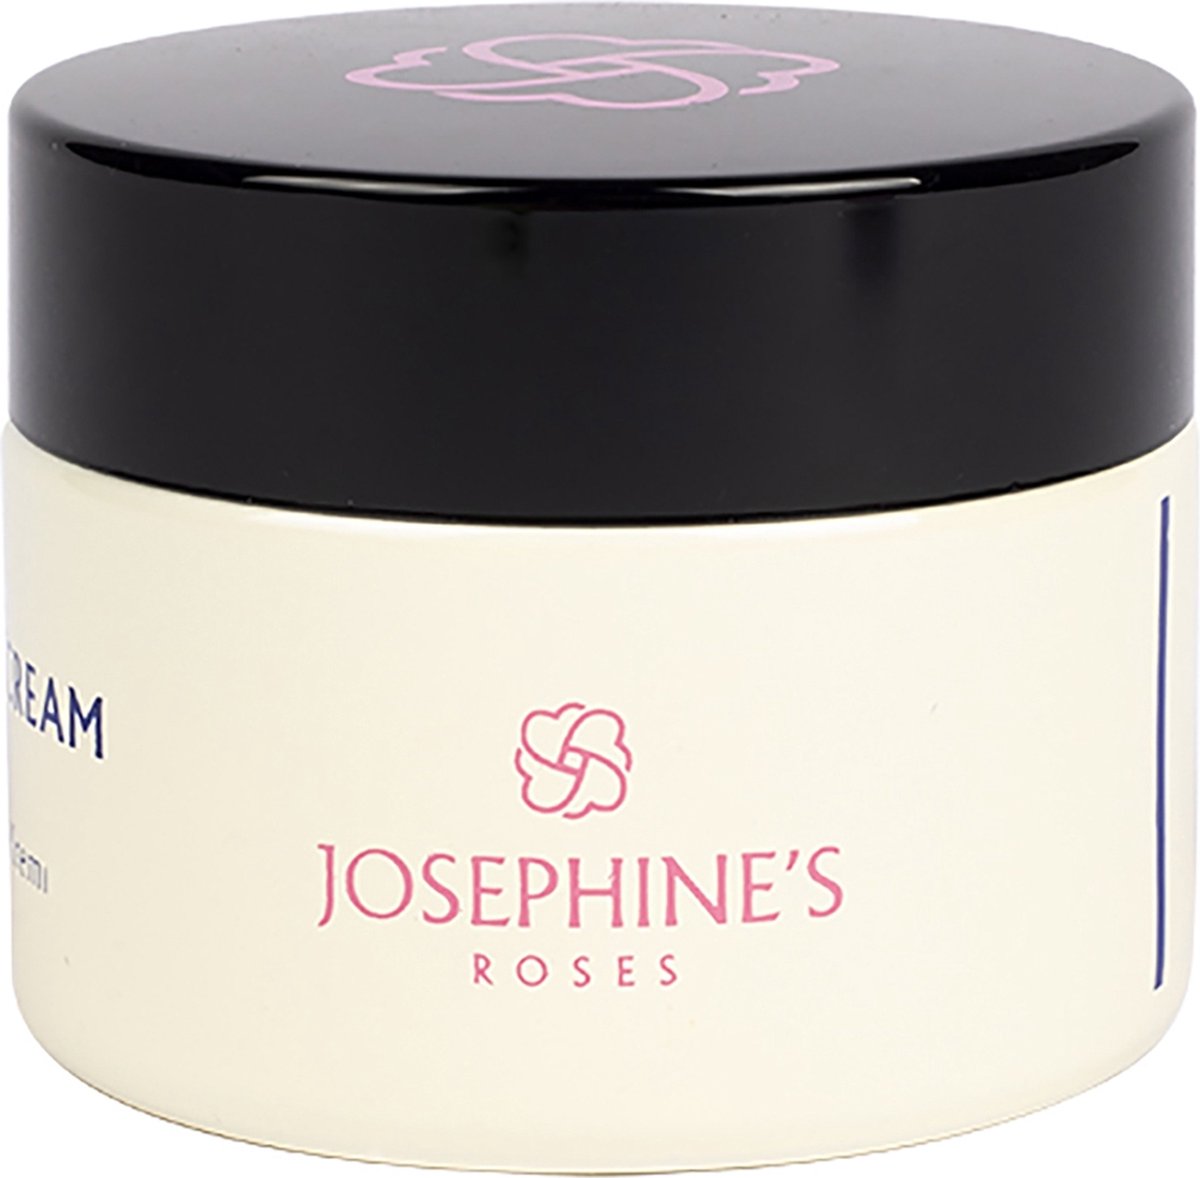 Josephine’s Roses SPF 15 Dagcreme Vrouwen - Gezichtscrème - Zonnebrandcrème voor gezicht - 50ml